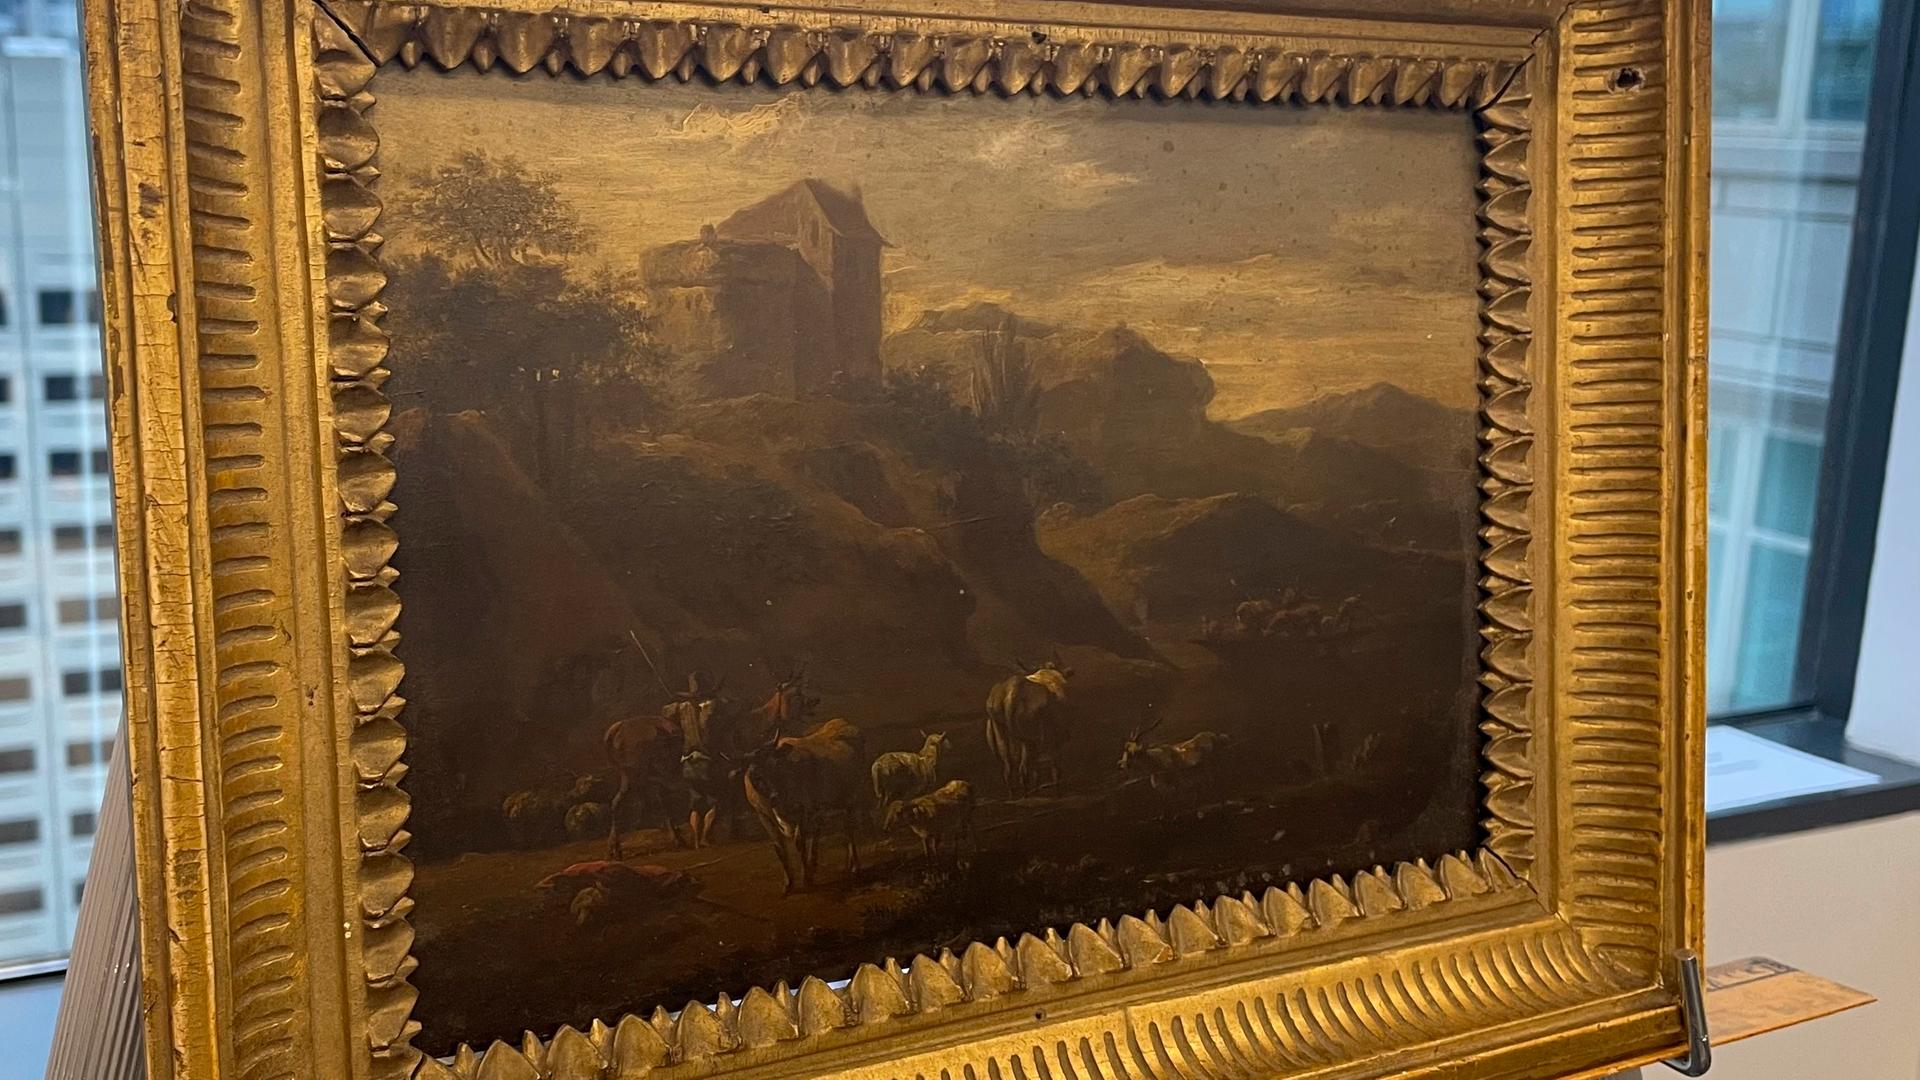 Zu sehen ist das Gemälde "Landschaft italienischen Charakters" des österreichischen Malers Johann Franz Nepomuk Lauterer.